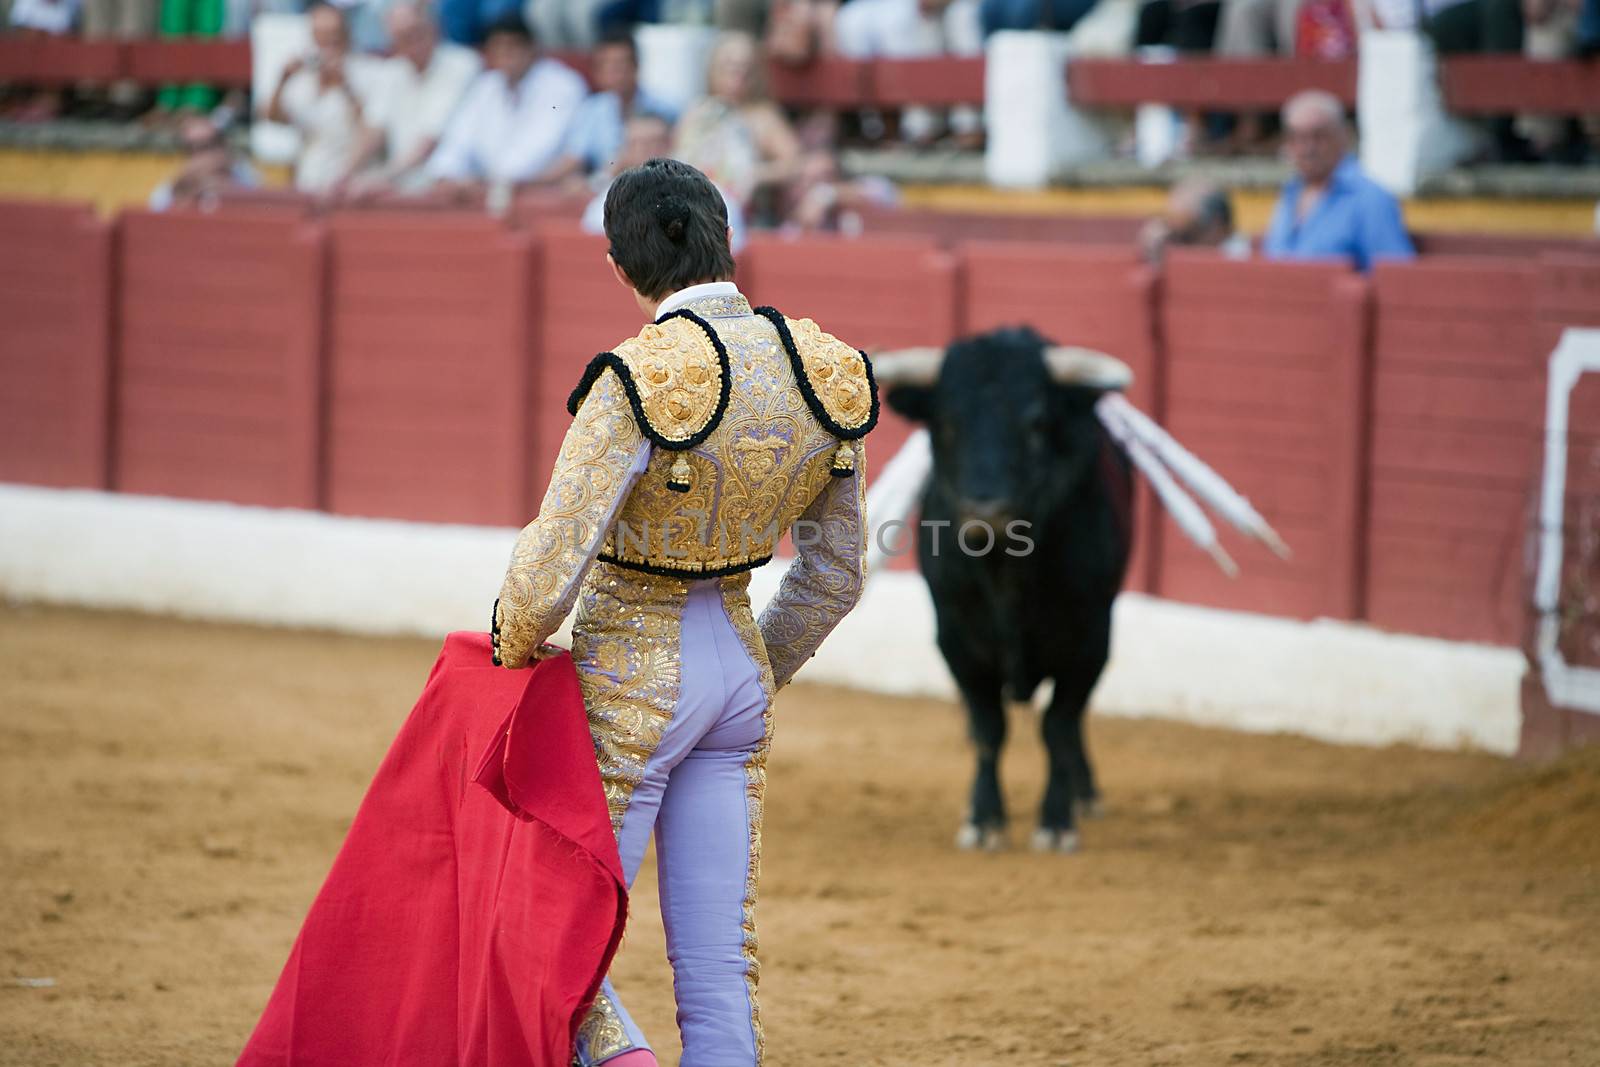 The Spanish bullfighter Sebastian Castella, Bullfight at Andujar bullring, Jaen, Spain, 11 September 2009